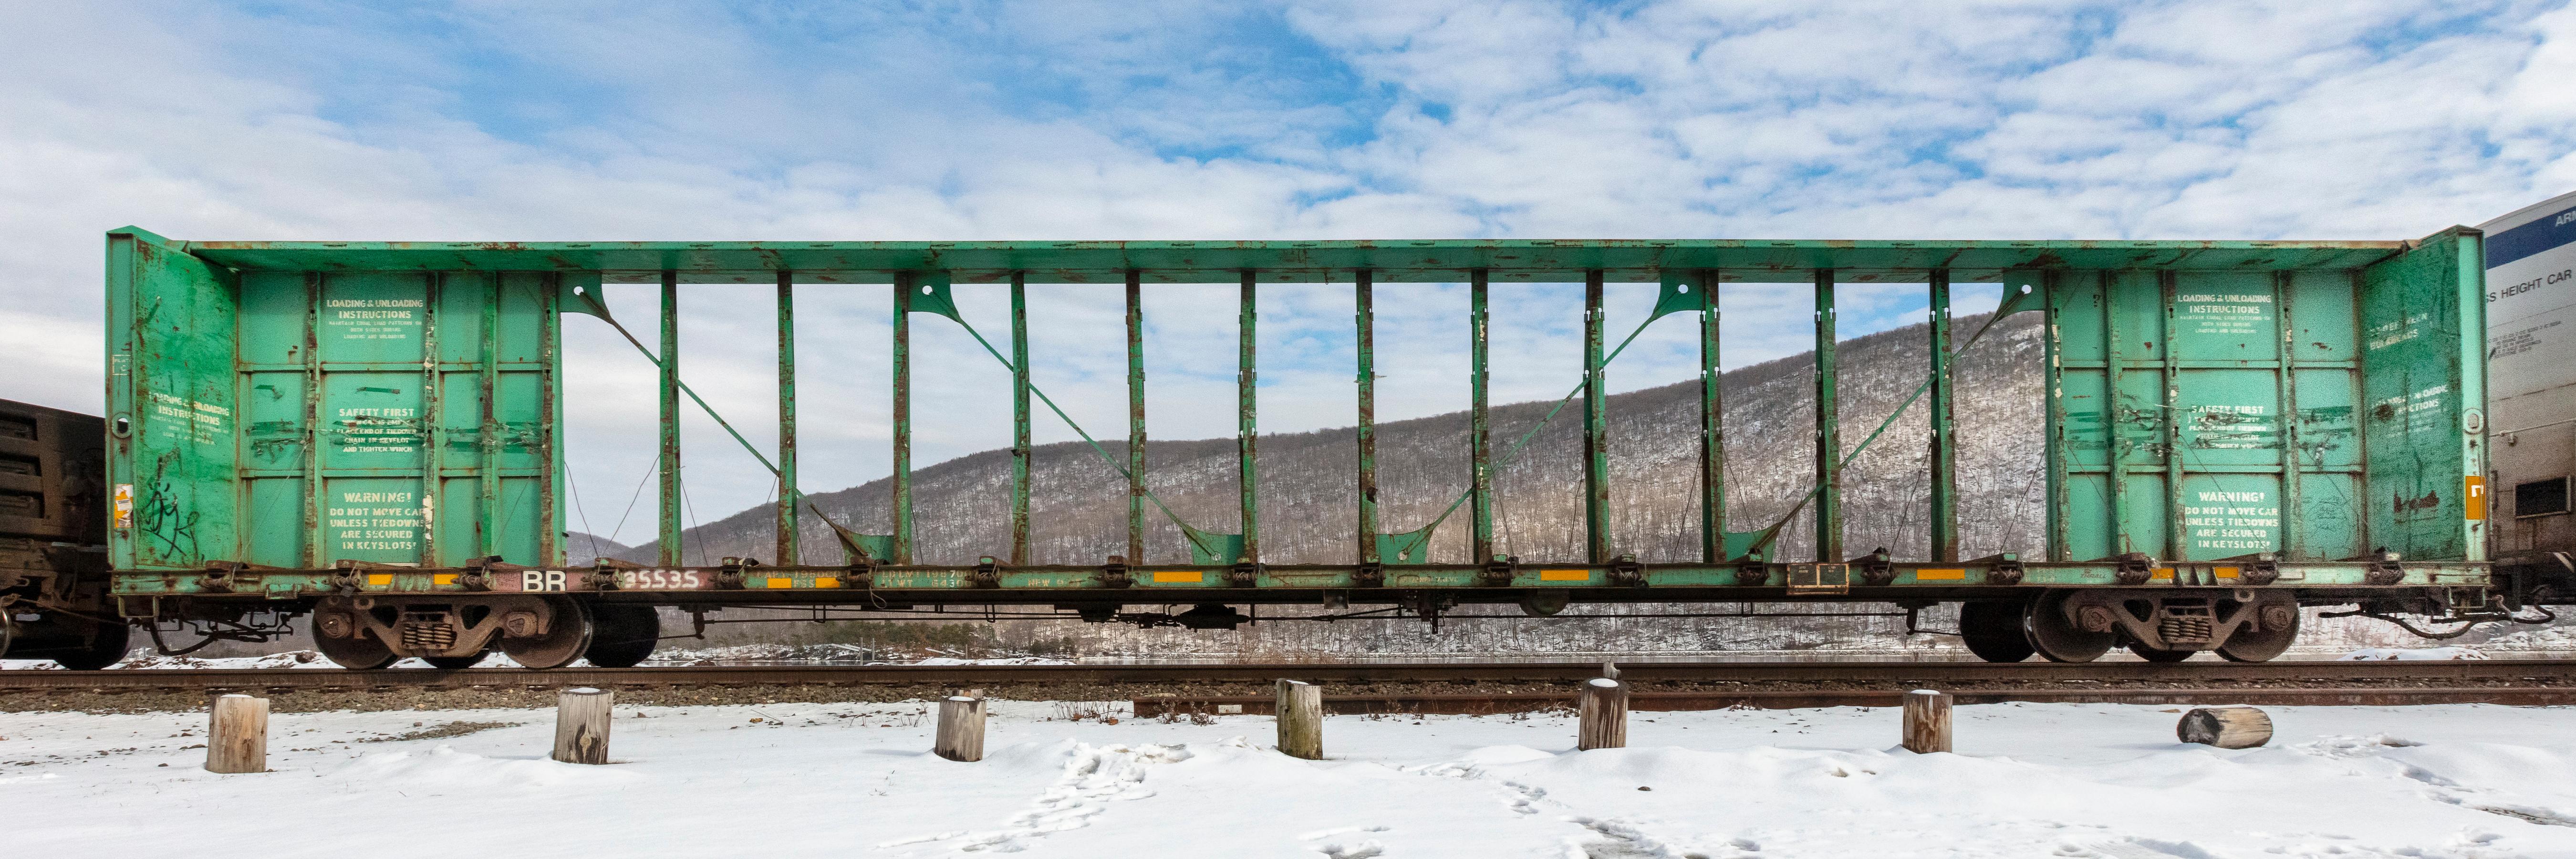 Landscape Photograph Stephen Mallon - Passing Freight - Photographie couleur contemporaine « BR 35535 » de la série des trains de marchandises